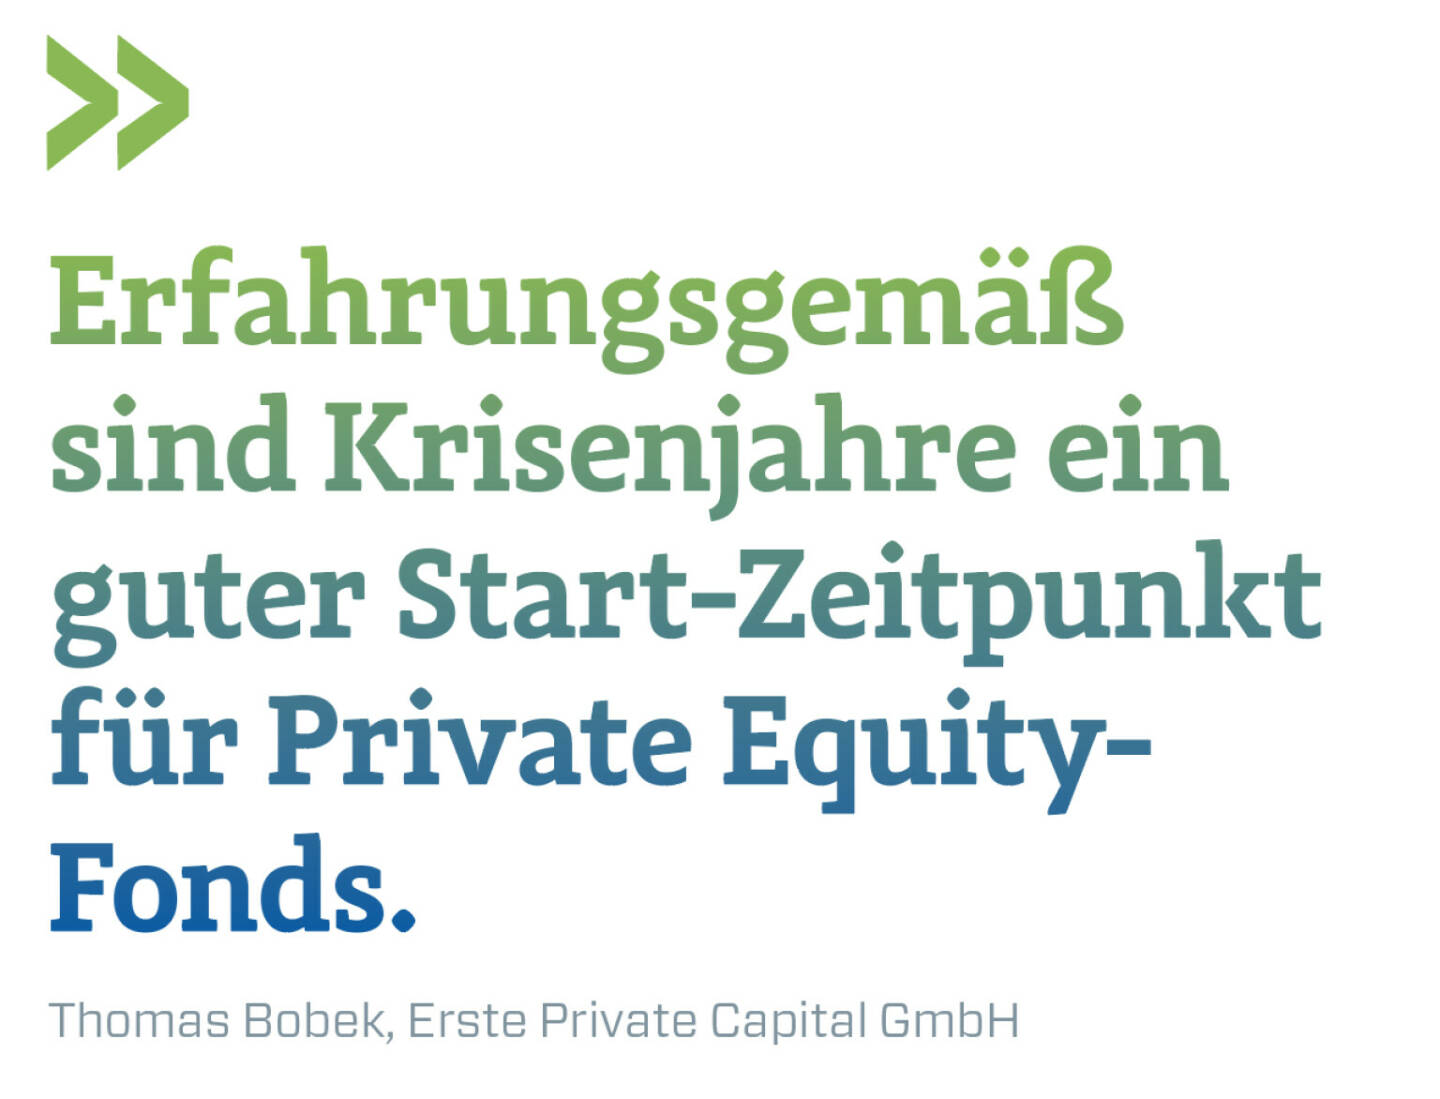 Erfahrungsgemäß sind Krisenjahre ein guter Start-Zeitpunkt für Private Equity-
Fonds. 
Thomas Bobek, Erste Private Capital GmbH